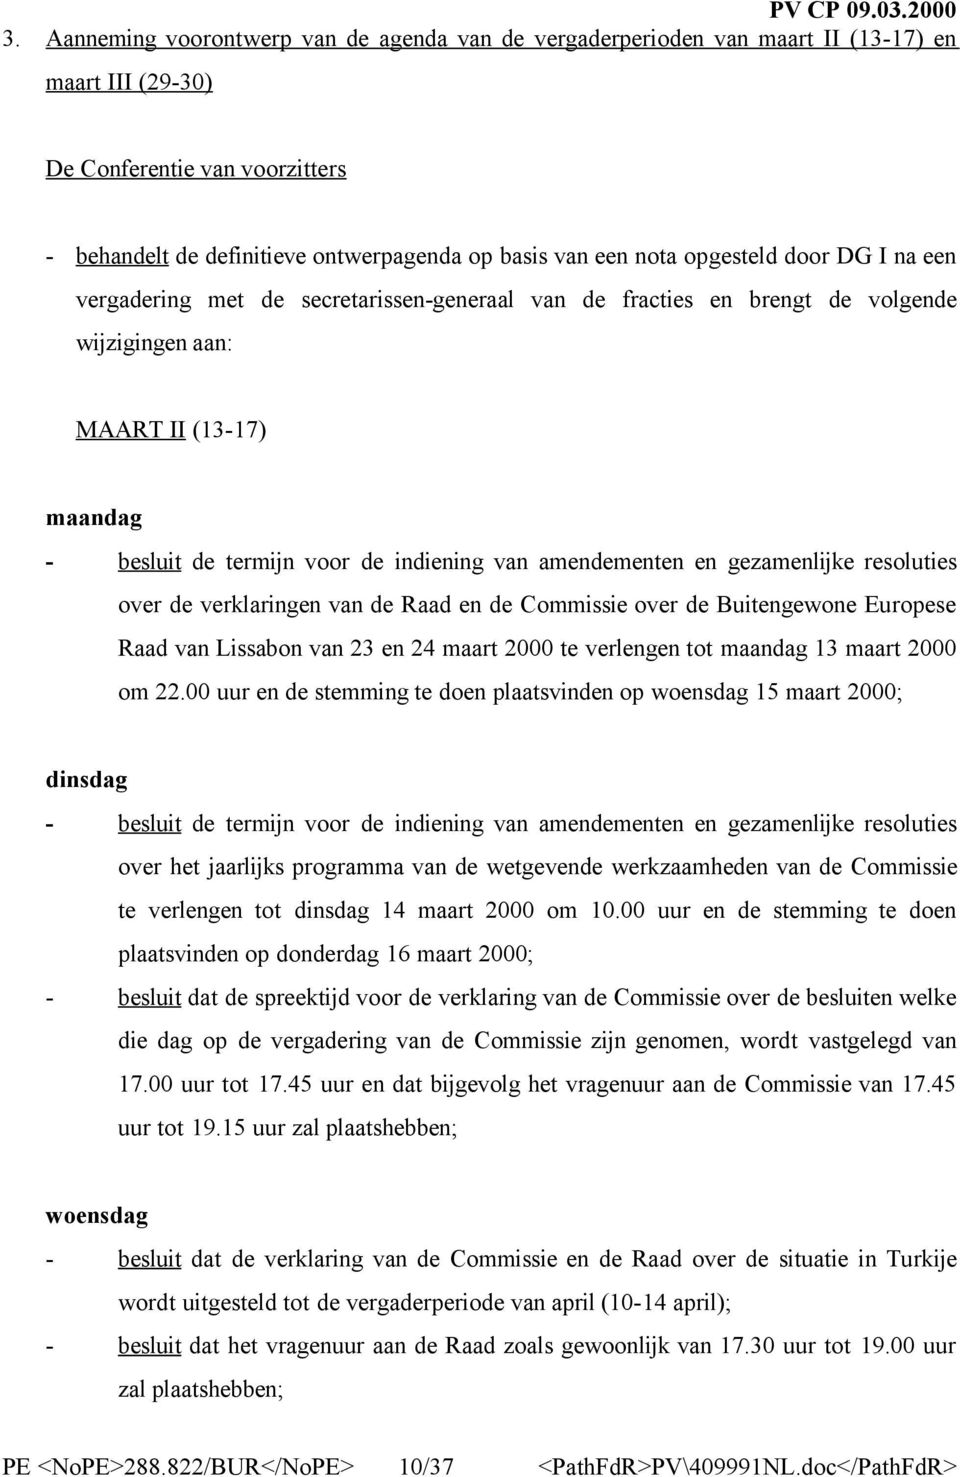 resoluties over de verklaringen van de Raad en de Commissie over de Buitengewone Europese Raad van Lissabon van 23 en 24 maart 2000 te verlengen tot maandag 13 maart 2000 om 22.